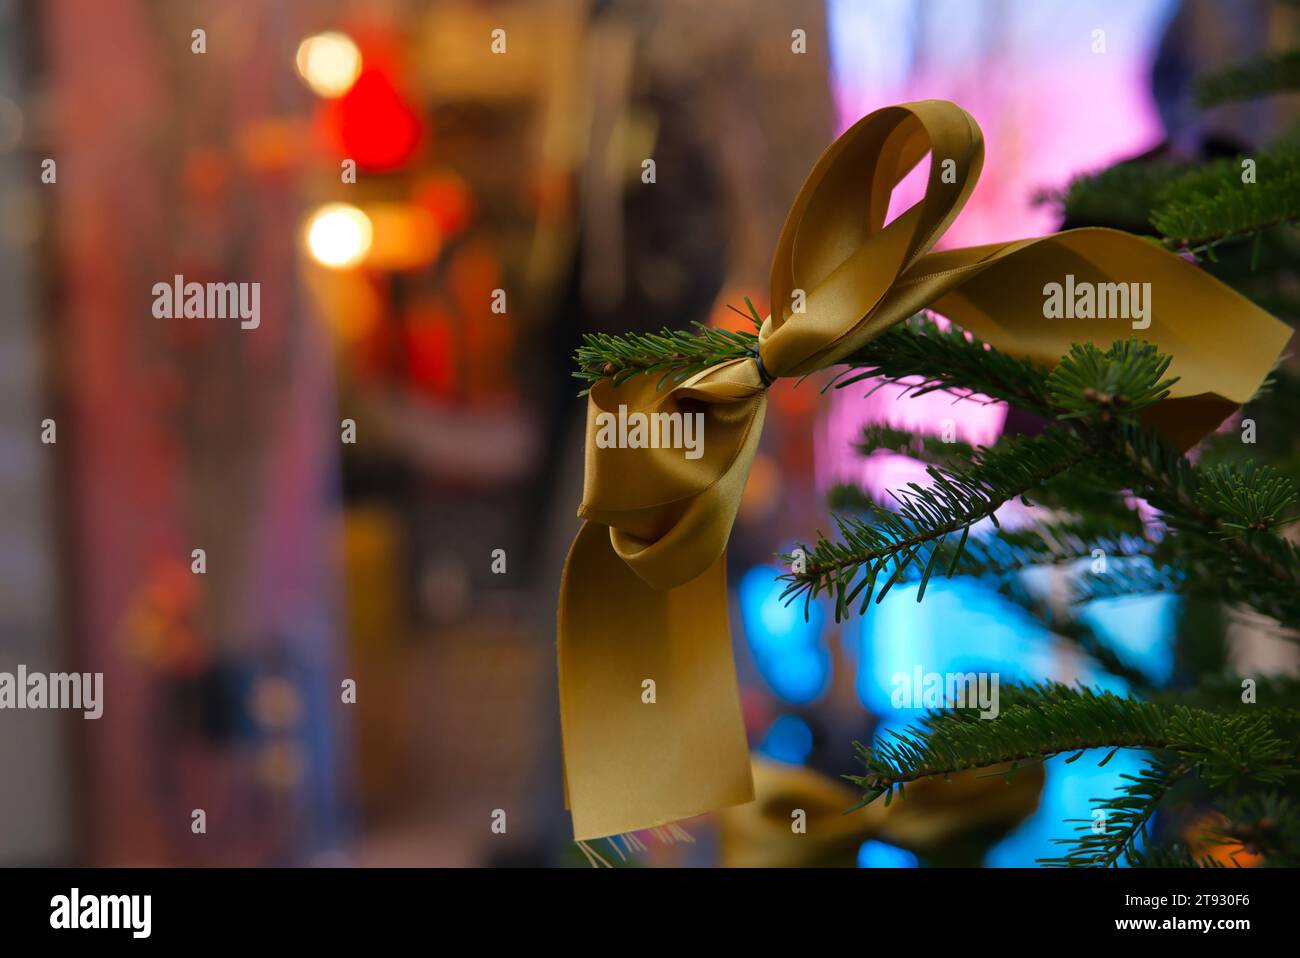 Mit diesem faszinierenden Bild mit einem goldenen Stoffband auf einem Tannenbaum-Zweig verschönern Sie Ihre Weihnachtseinkäufe und Weihnachtseinkäufe. Das b Stockfoto